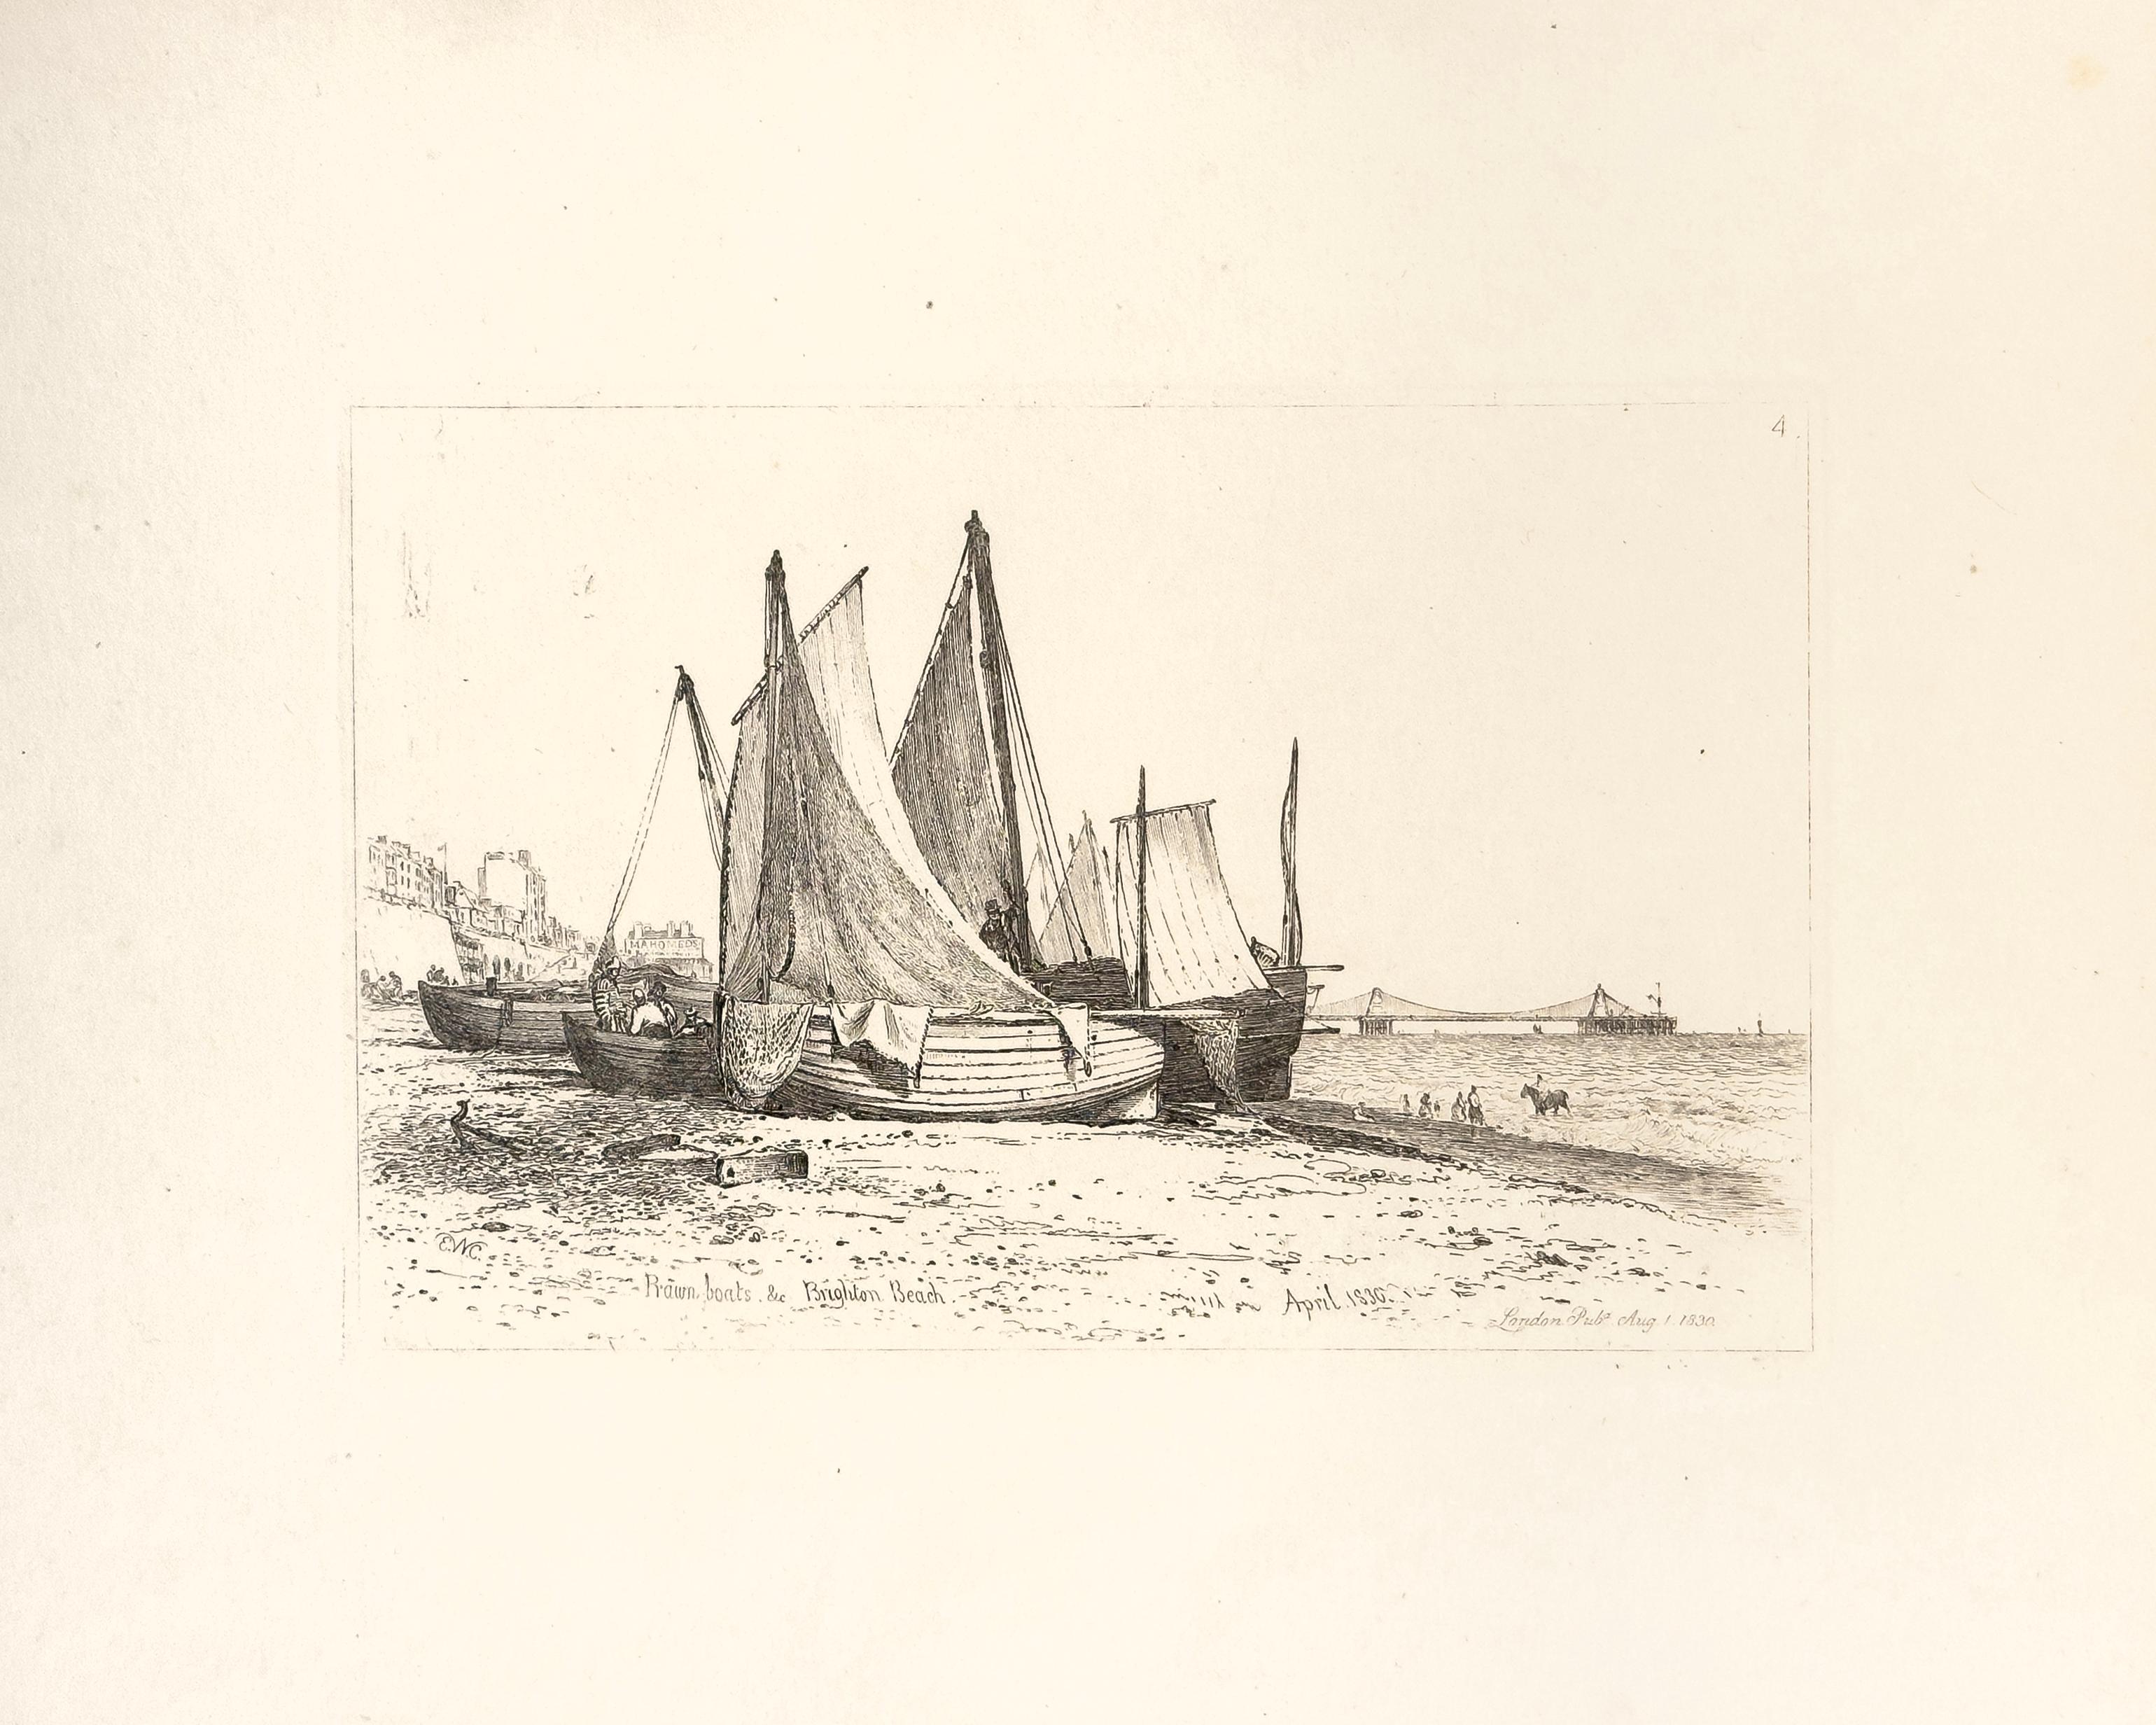 E. W. Cooke Landscape Print - 43: Prawn boats, Brighton Beach